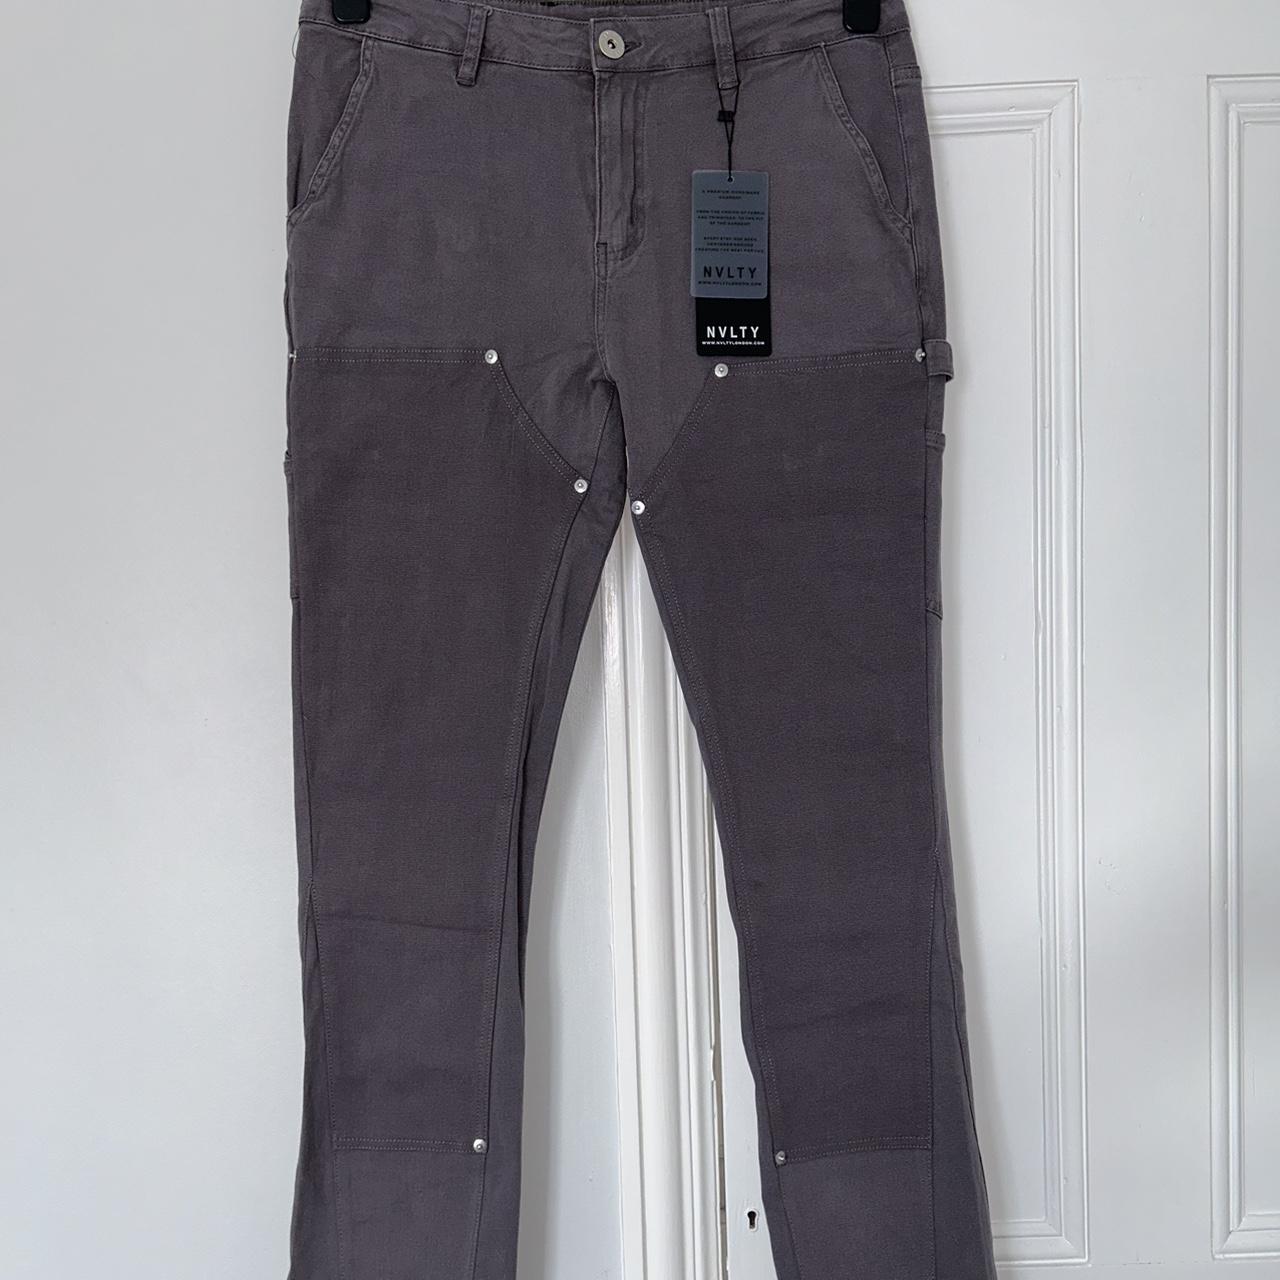 Vintage Flare Cargo Jeans - Black – N V L T Y